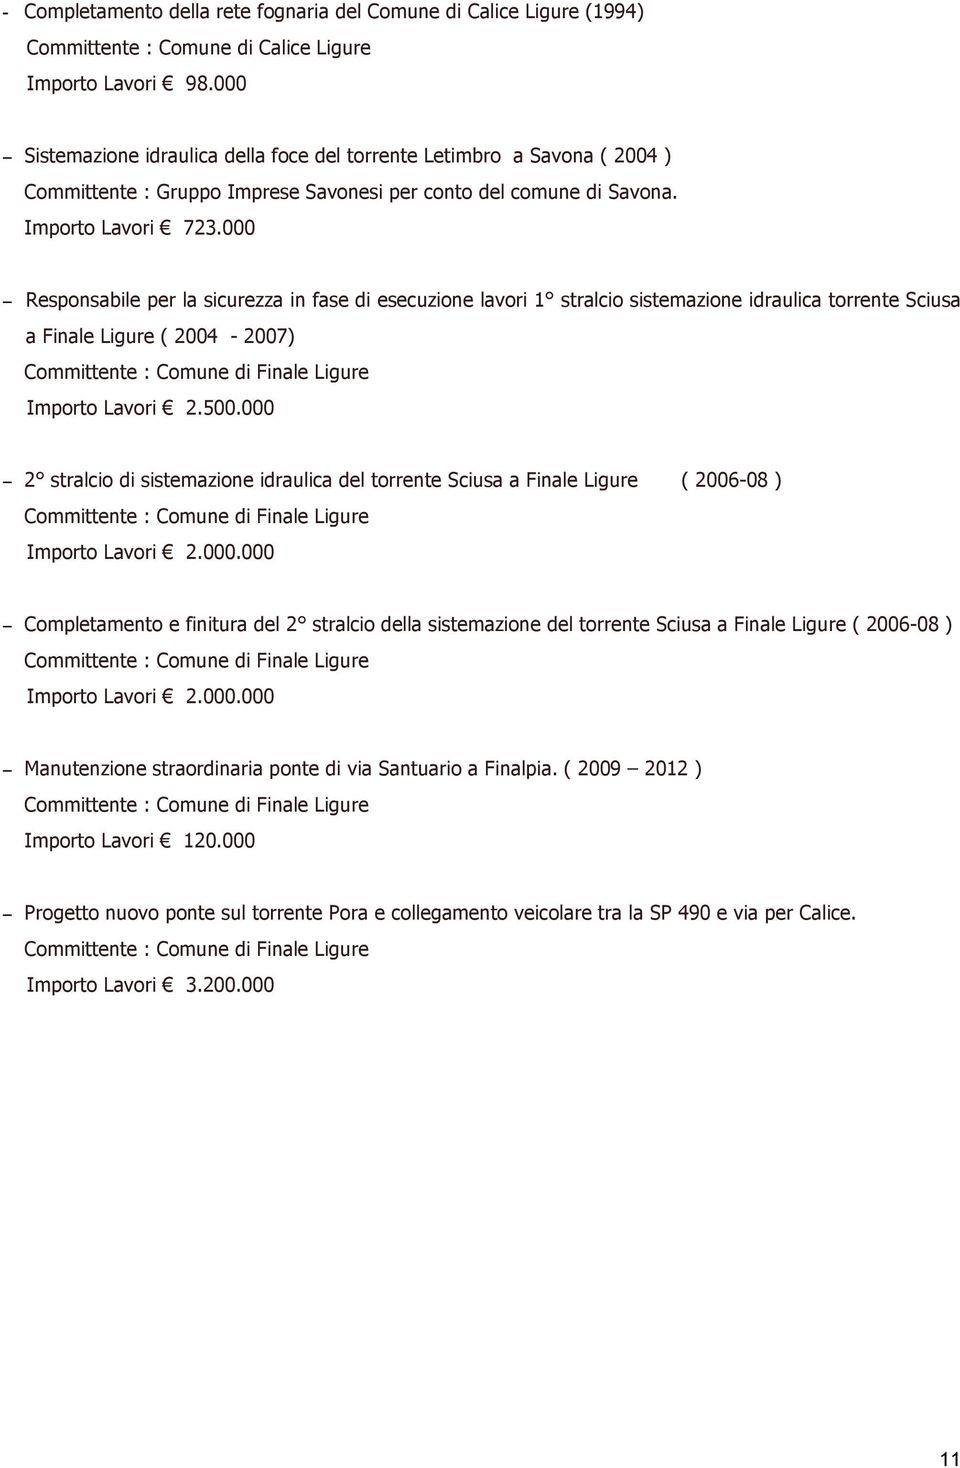 000 Responsabile per la sicurezza in fase di esecuzione lavori 1 stralcio sistemazione idraulica torrente Sciusa a Finale Ligure ( 2004-2007) Importo Lavori 2.500.